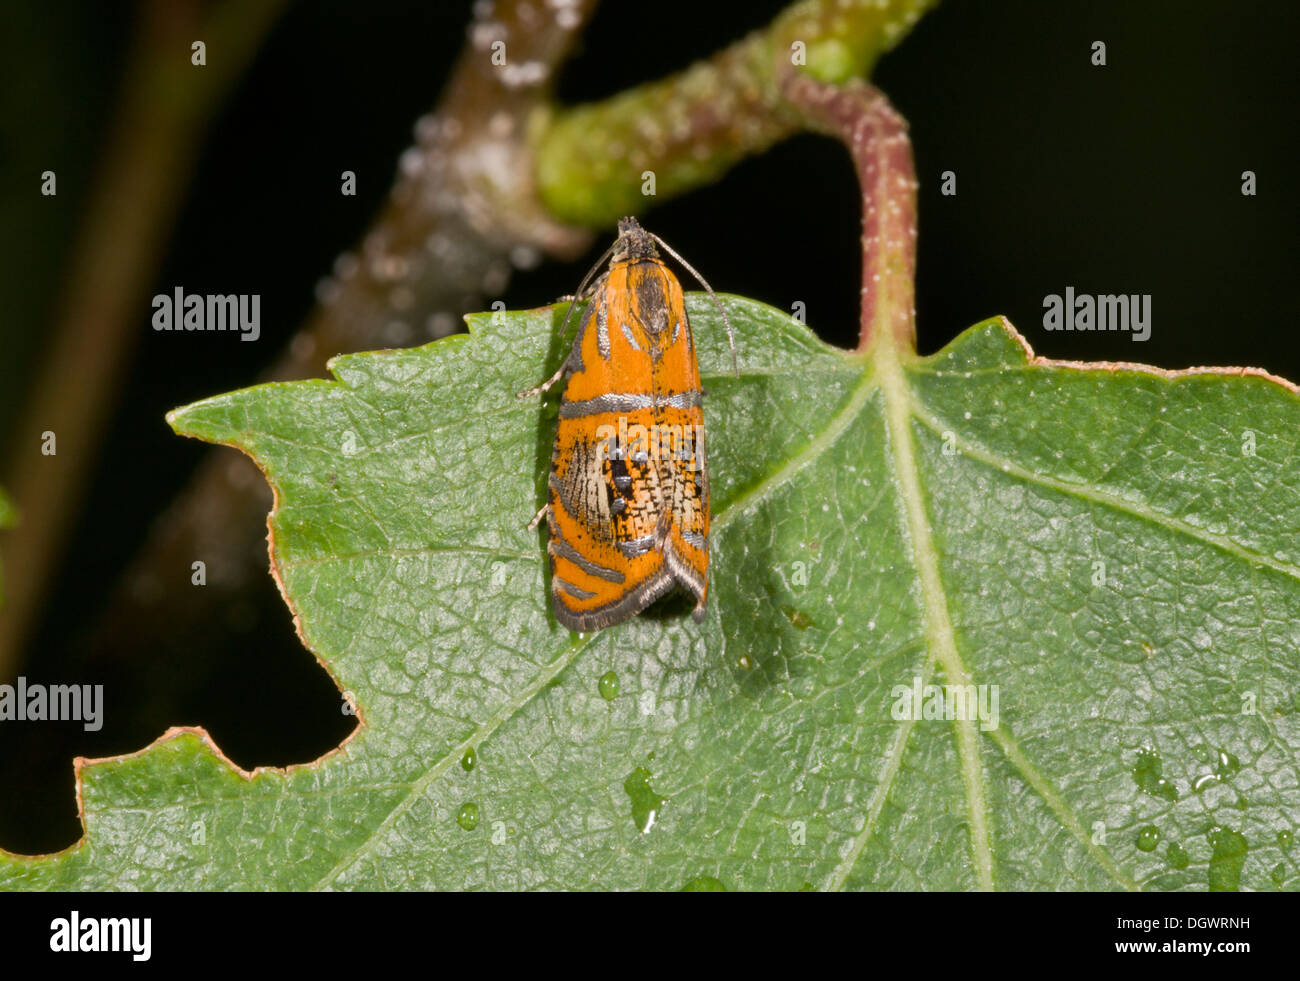 Marmo arcuata tarma Olethreutes arcuella; un micro-moth. Insolito, per il fatto che le larve si nutrono di foglie morte. Foto Stock